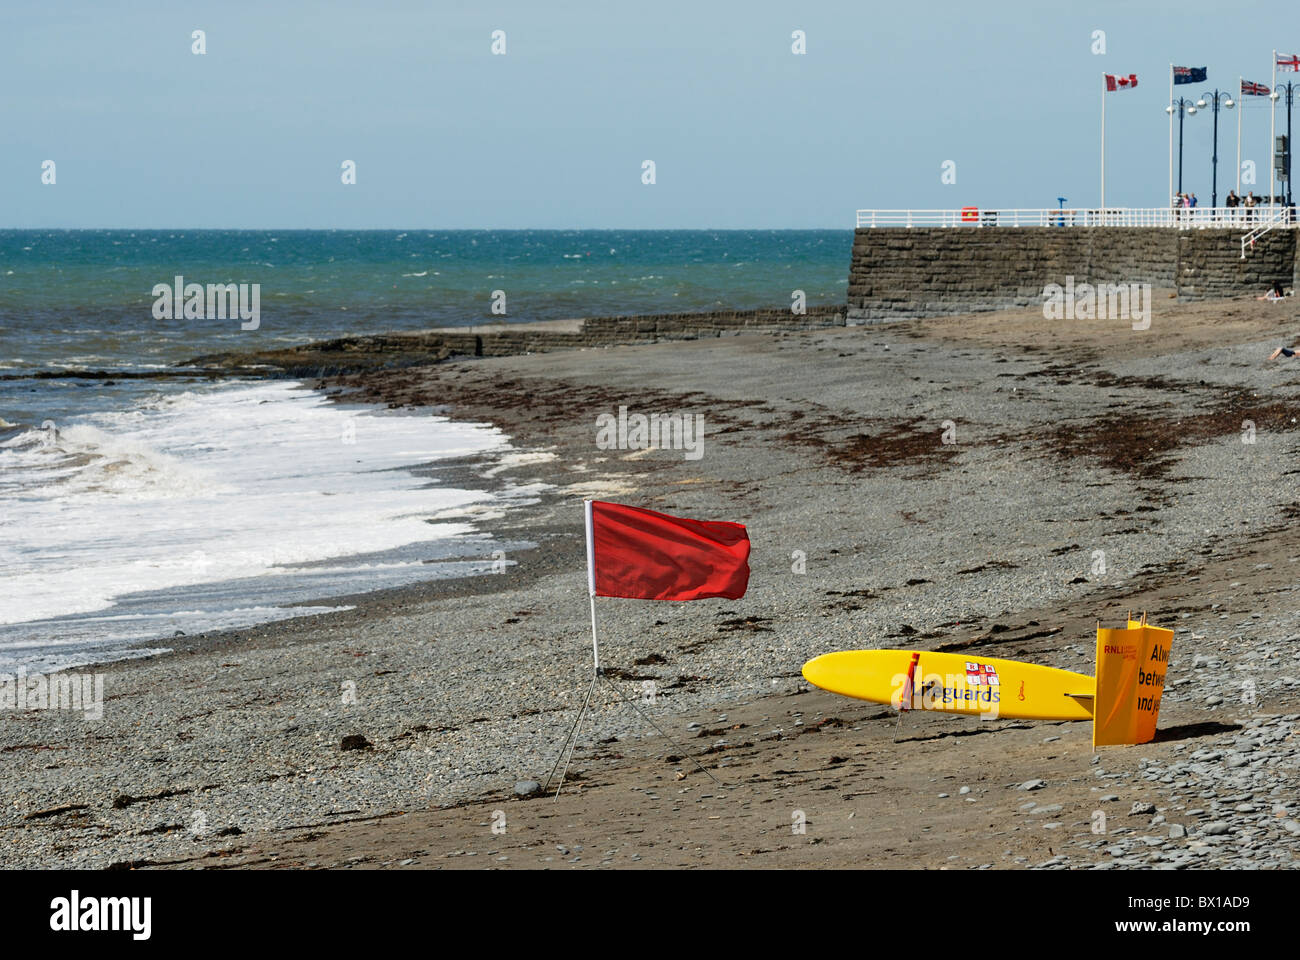 Red Flag di avviso con RNLI Salvataggio tavola da surf su una spiaggia deserta con mare mosso, Aberystwyth, Galles Foto Stock